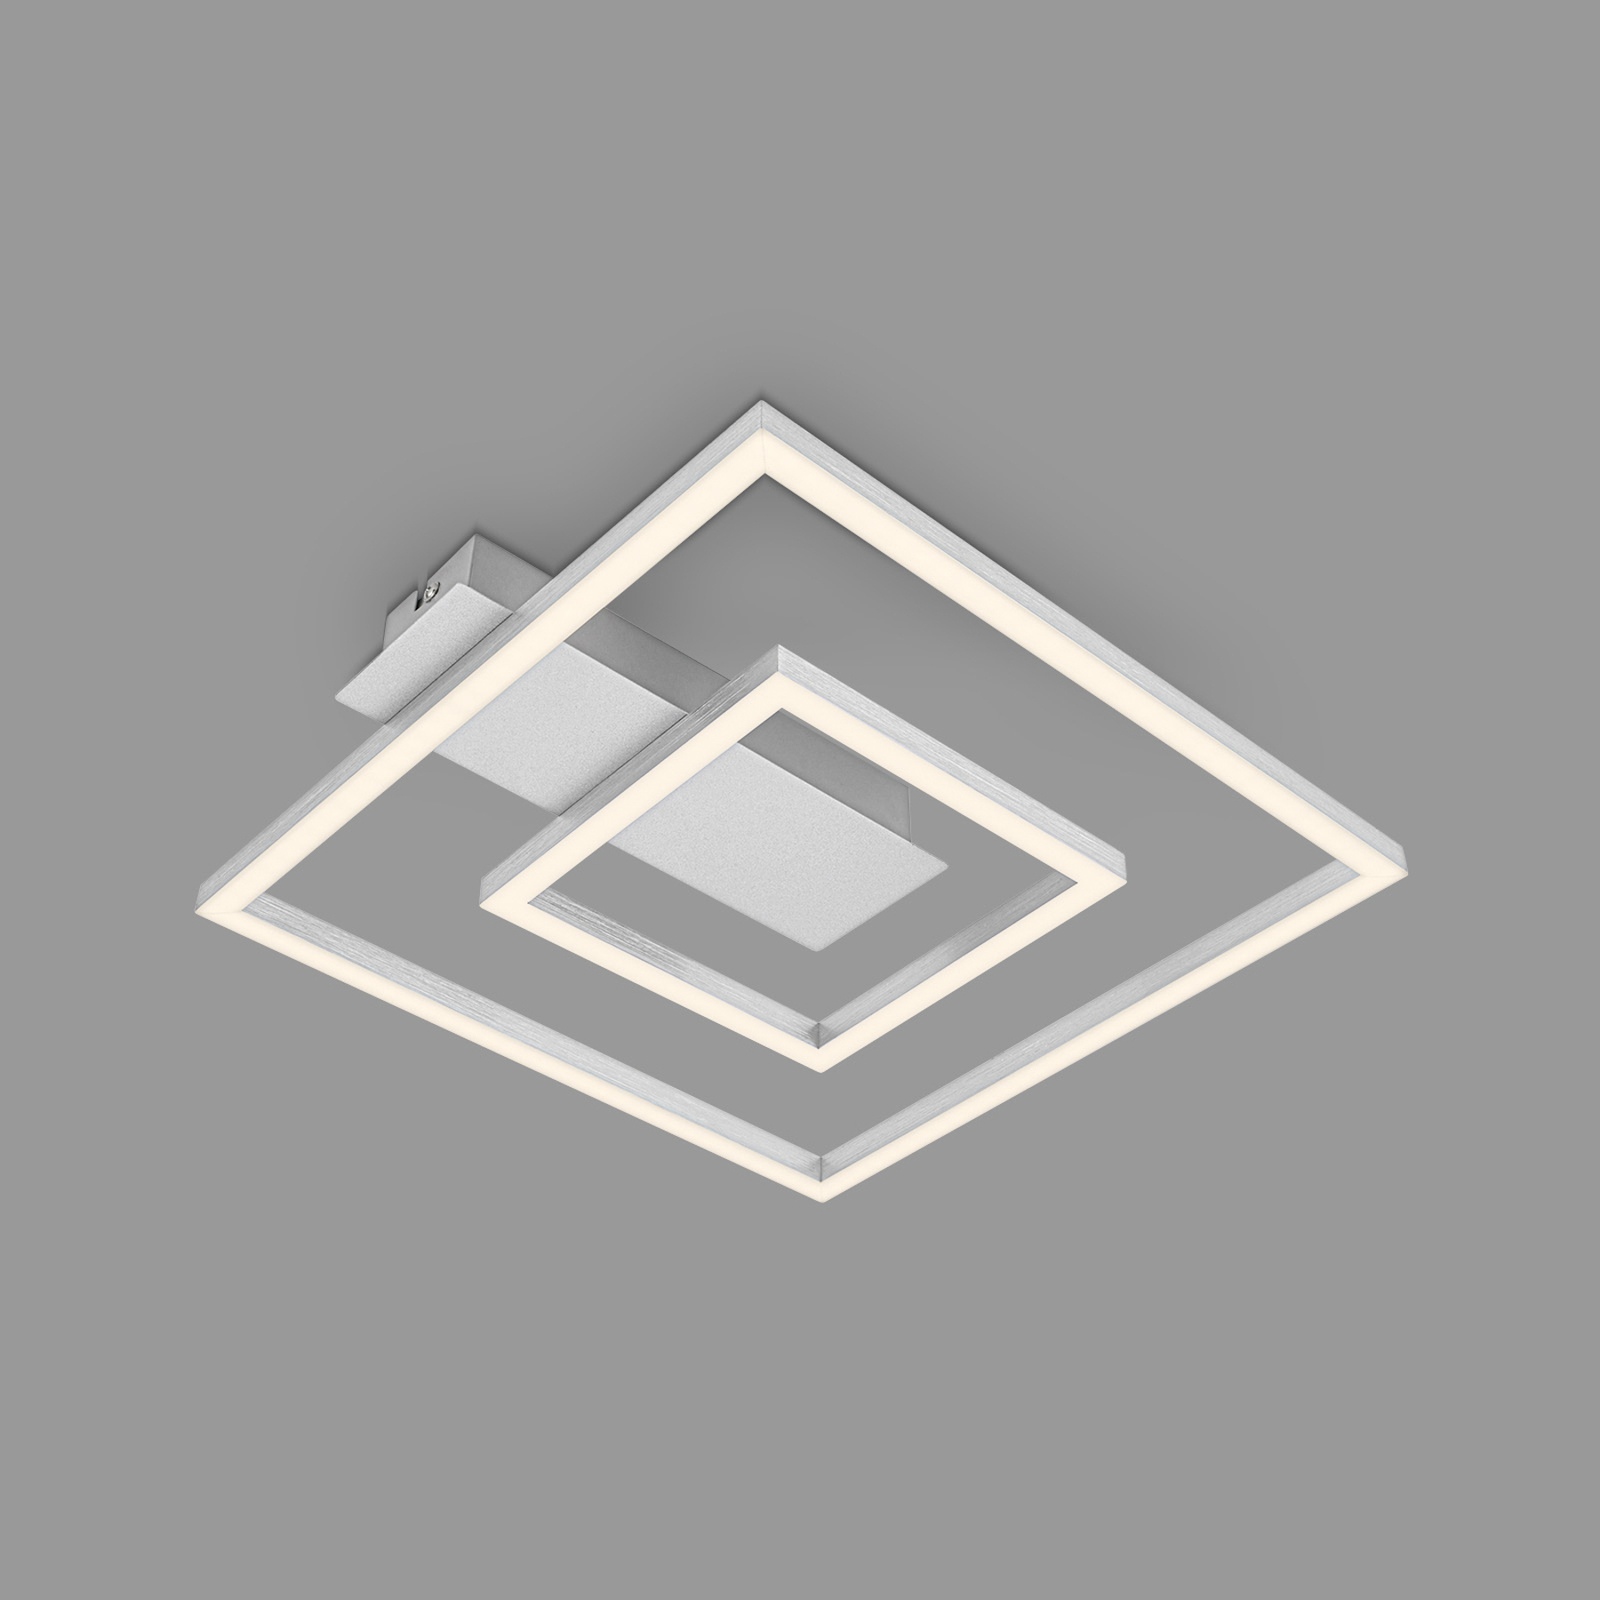 Φωτιστικό οροφής LED 3772 με 2 πλαίσια, αλουμίνιο